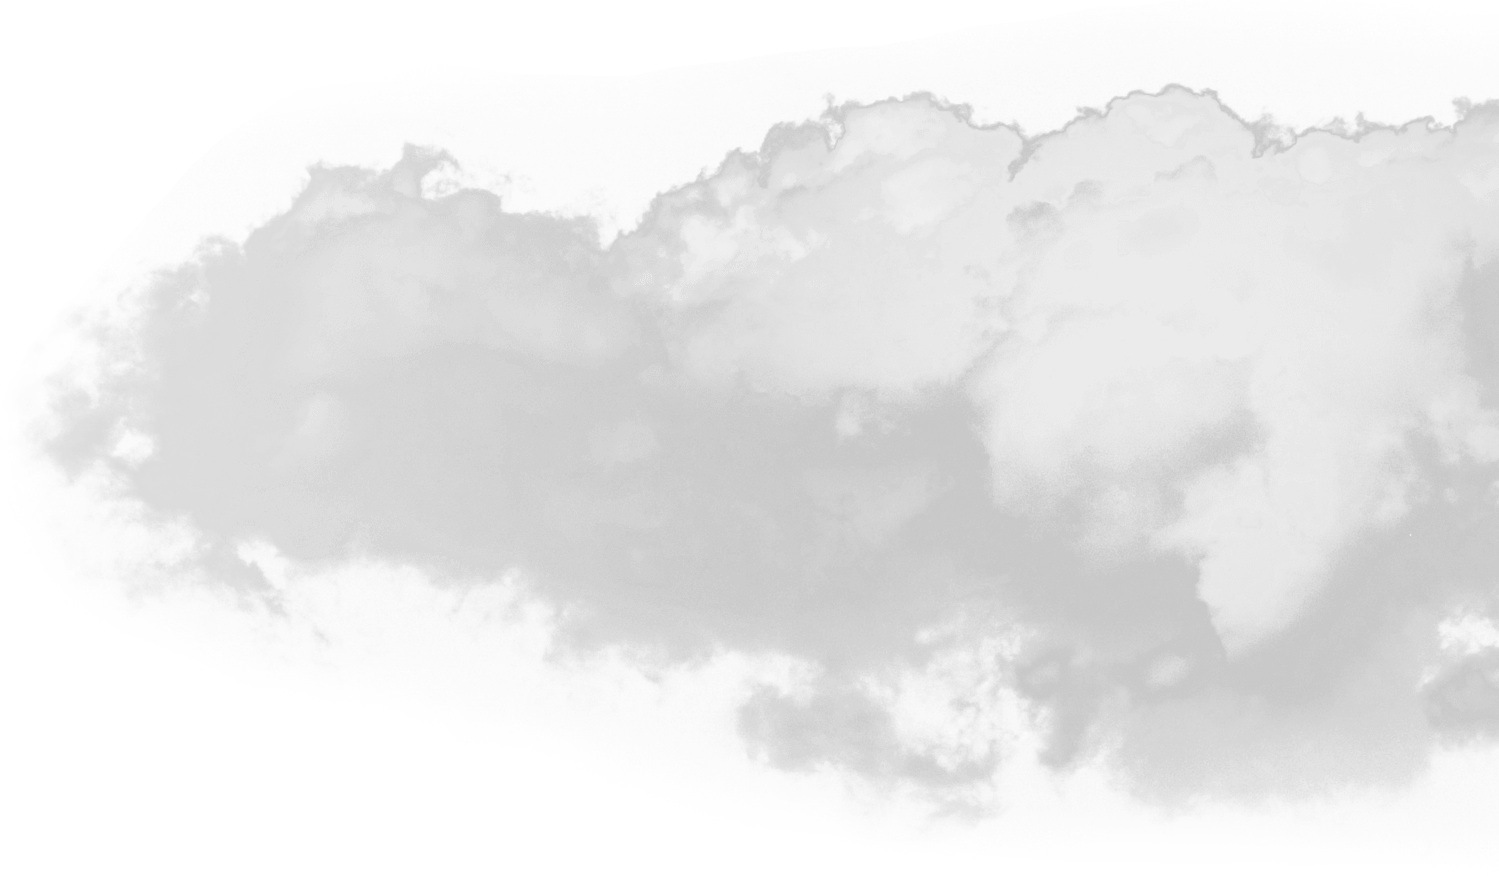 cloud PNG image transparent image download, size: 1499x876px